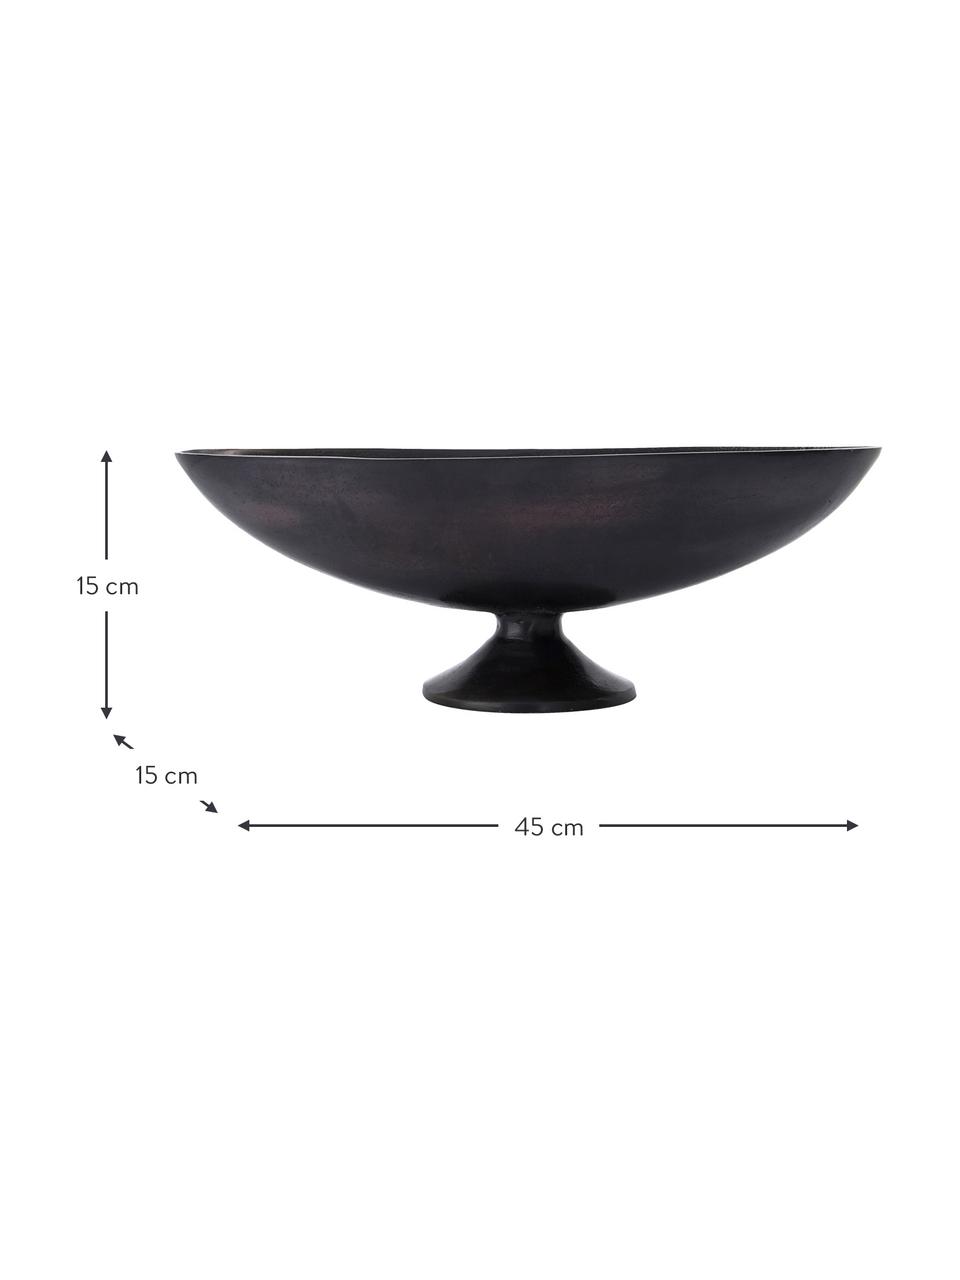 Oválná dekorativní mísa z kovu Foy, Potažený hliník, Tmavě hnědá, Š 45 cm, V 15 cm